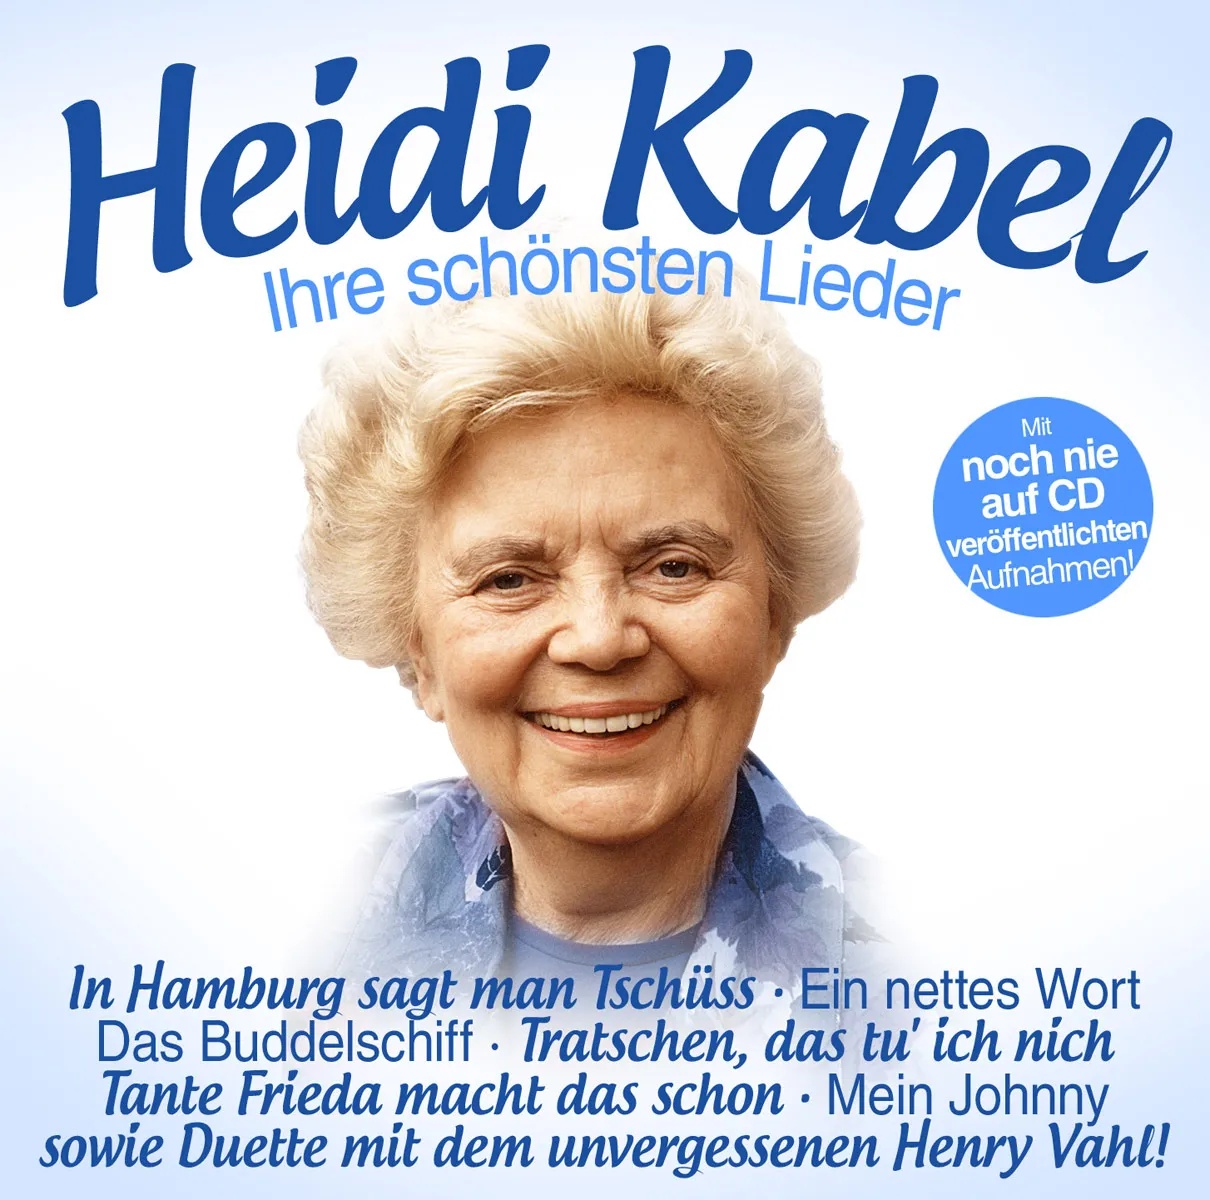 Heidi Kabel-Ihre Schönsten Lieder - Heidi Kabel. (CD)